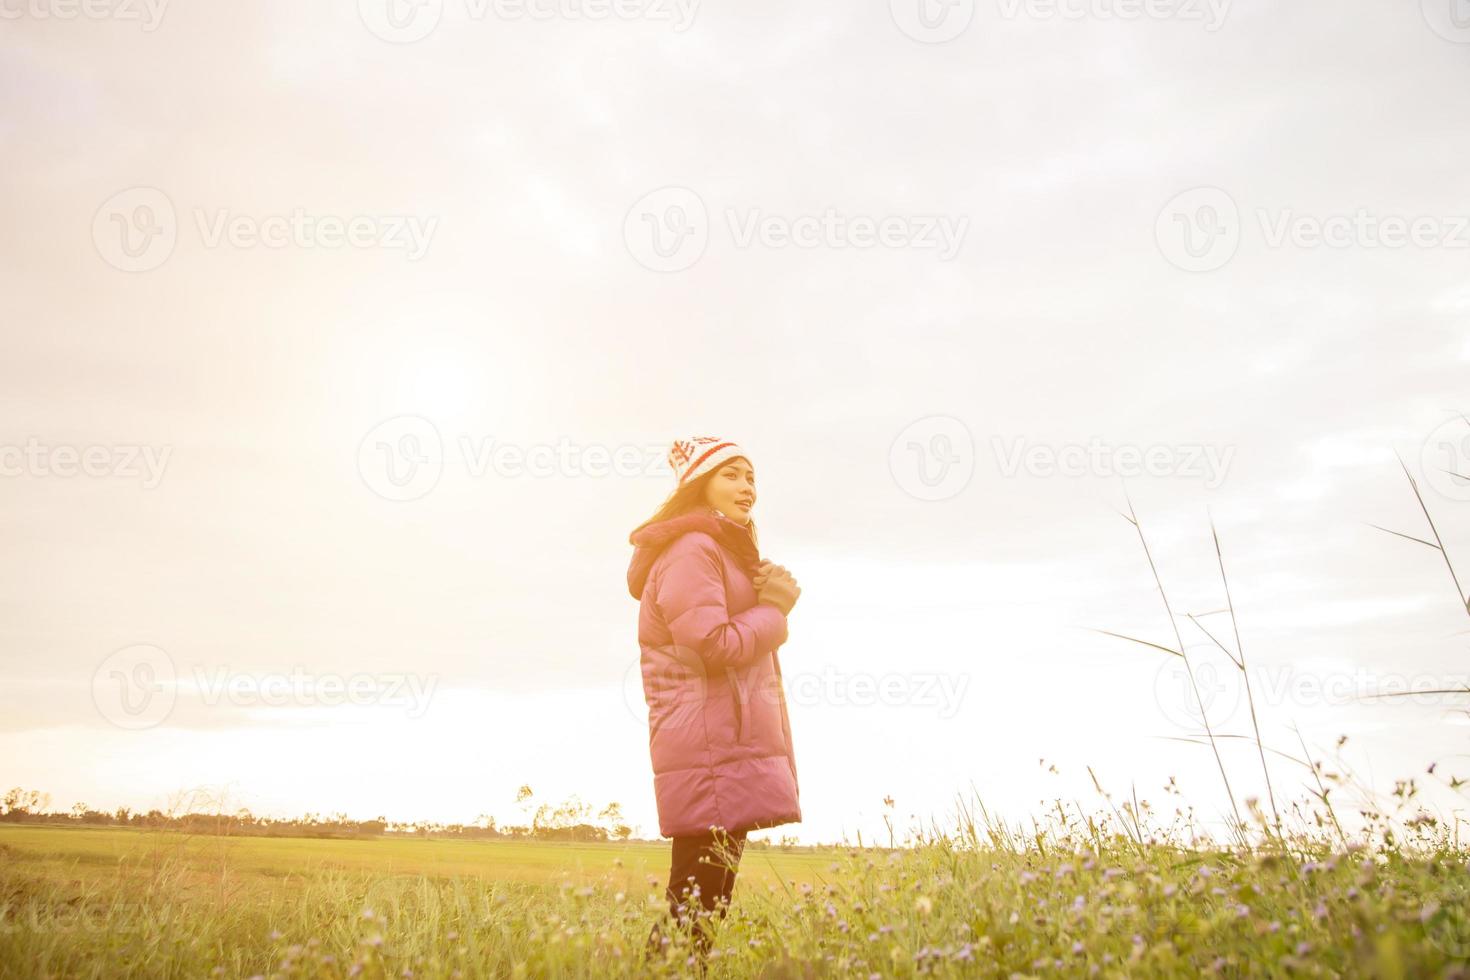 giovane donna stava giocando in un campo di fiori nell'aria invernale. foto